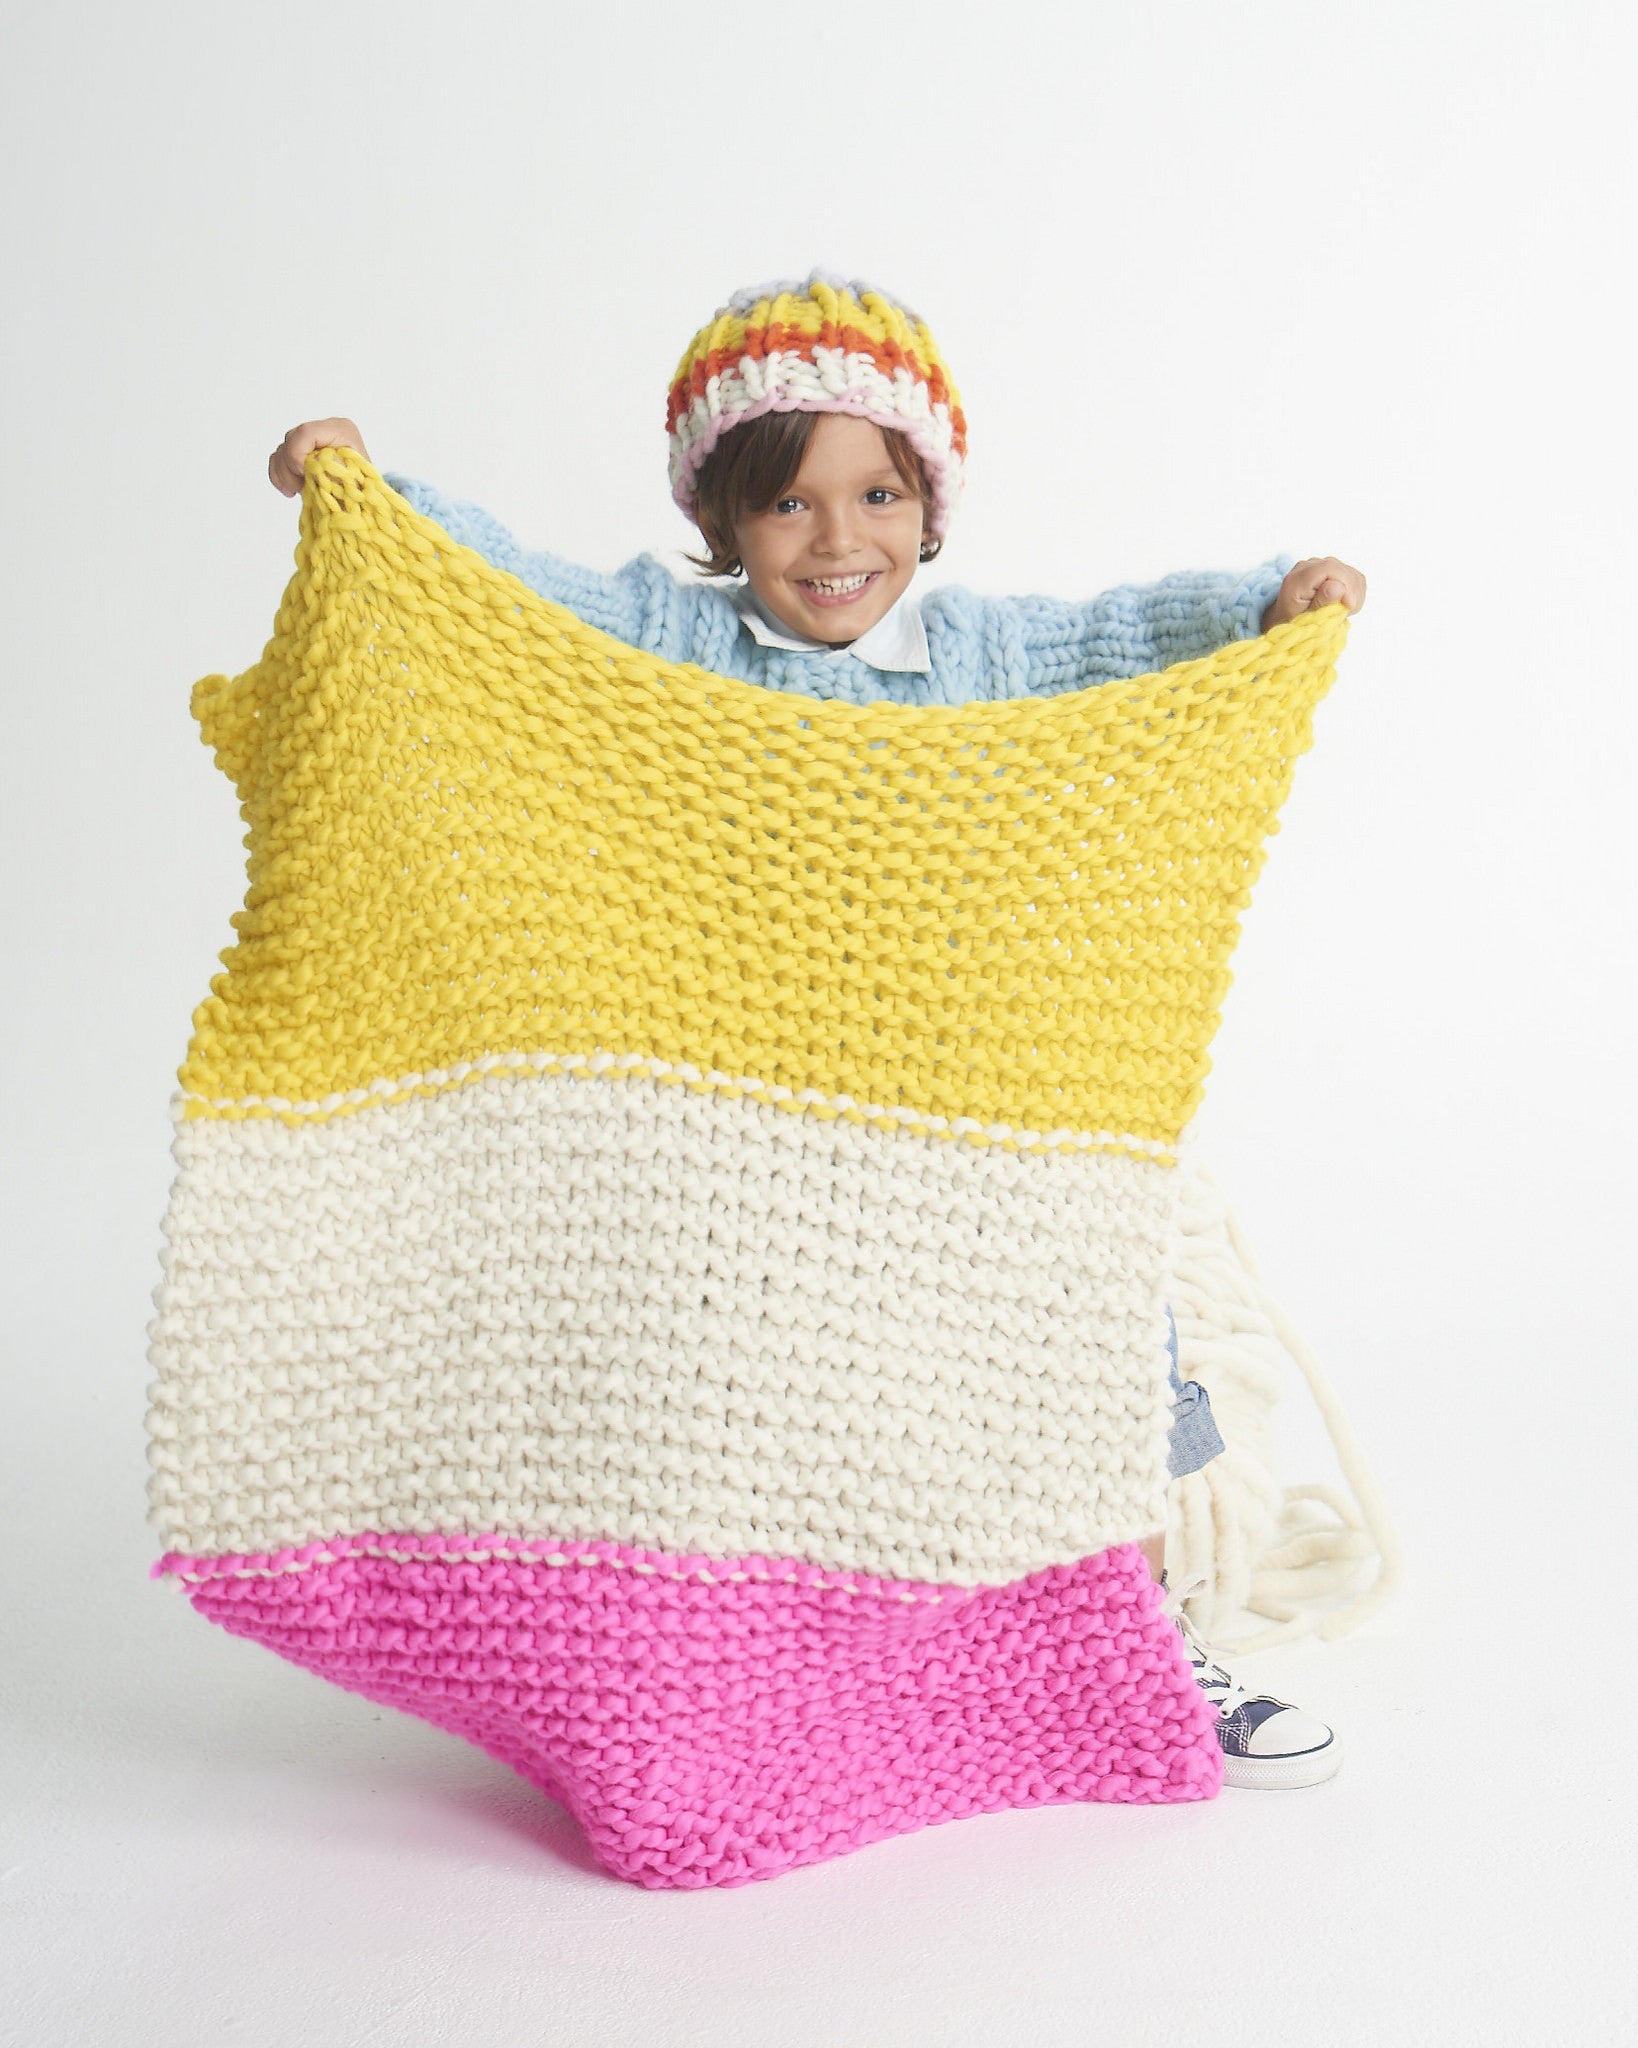 Little One's Blanket - Merino